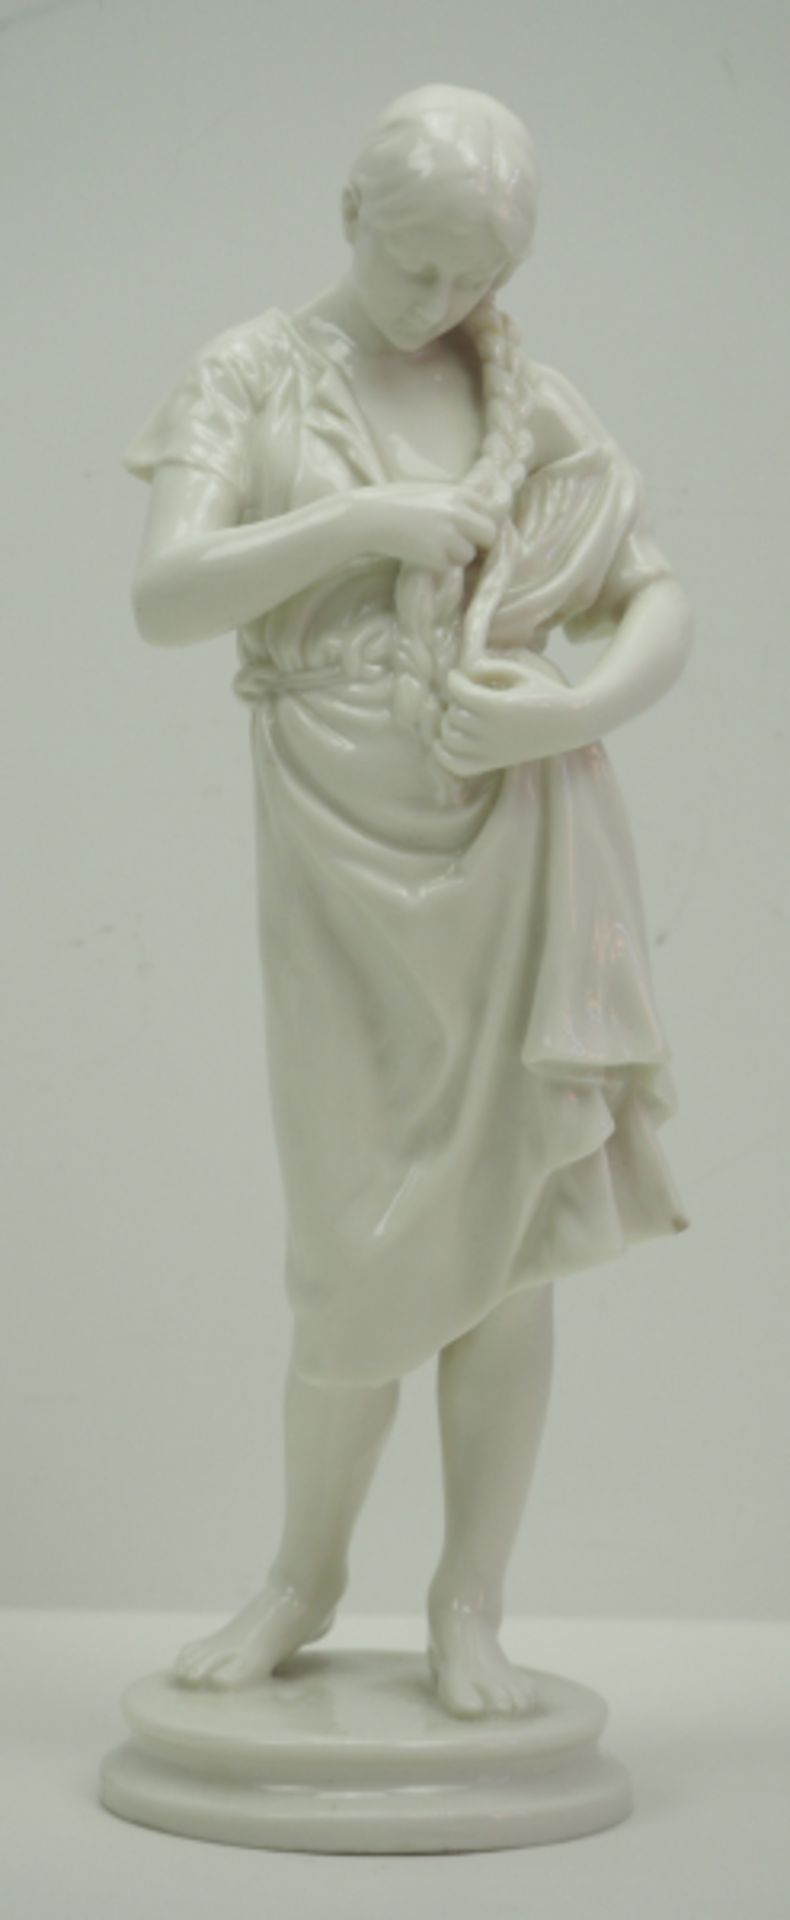 Porzellanfigur einer Maid.Weiß glasiertes Porzellan, eine Maid Ihr Haar flechtend und nach unten